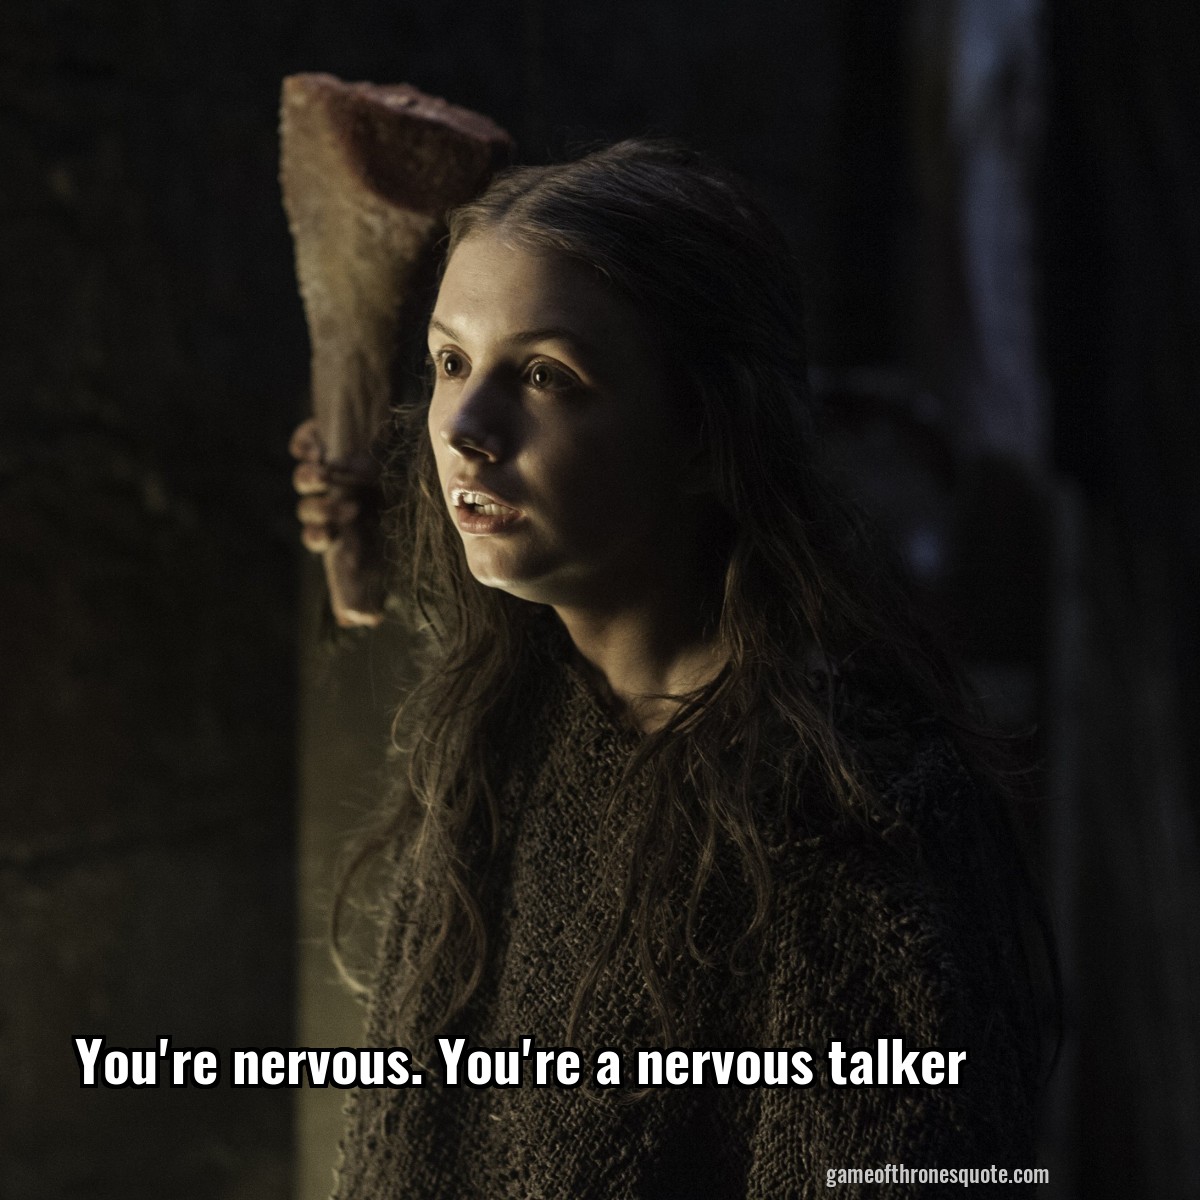 You're nervous. You're a nervous talker